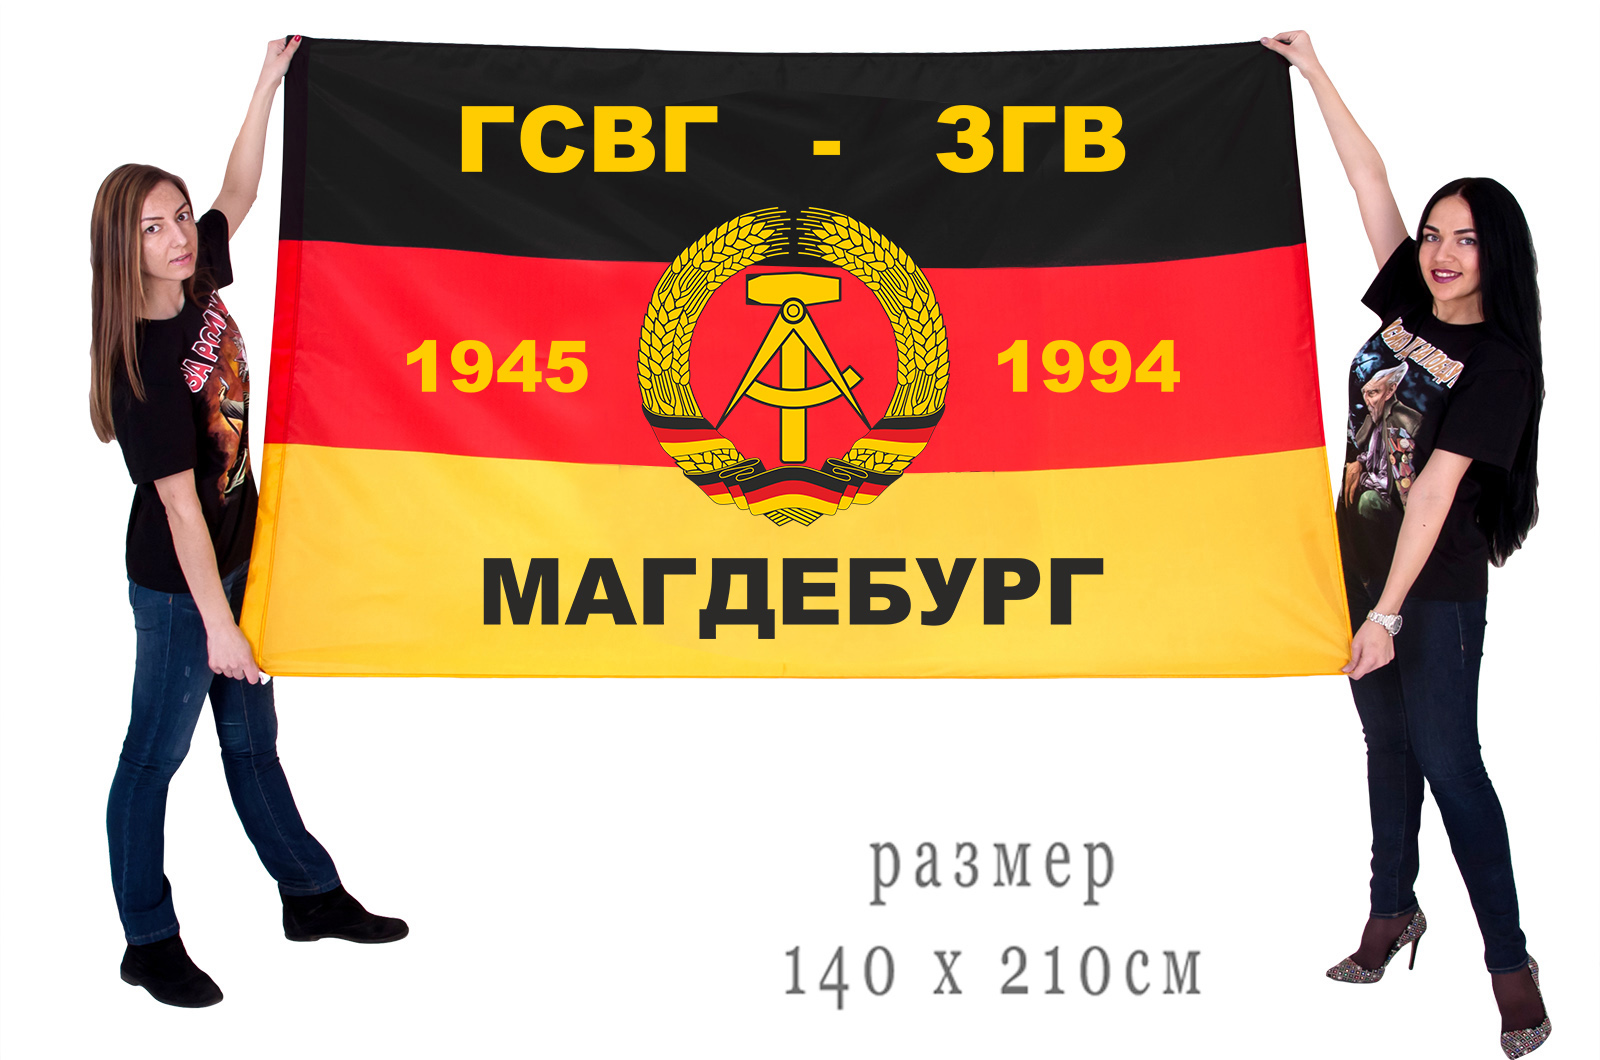 Флаг ГСВГ-ЗГВ "Магдебург" 1945-1994